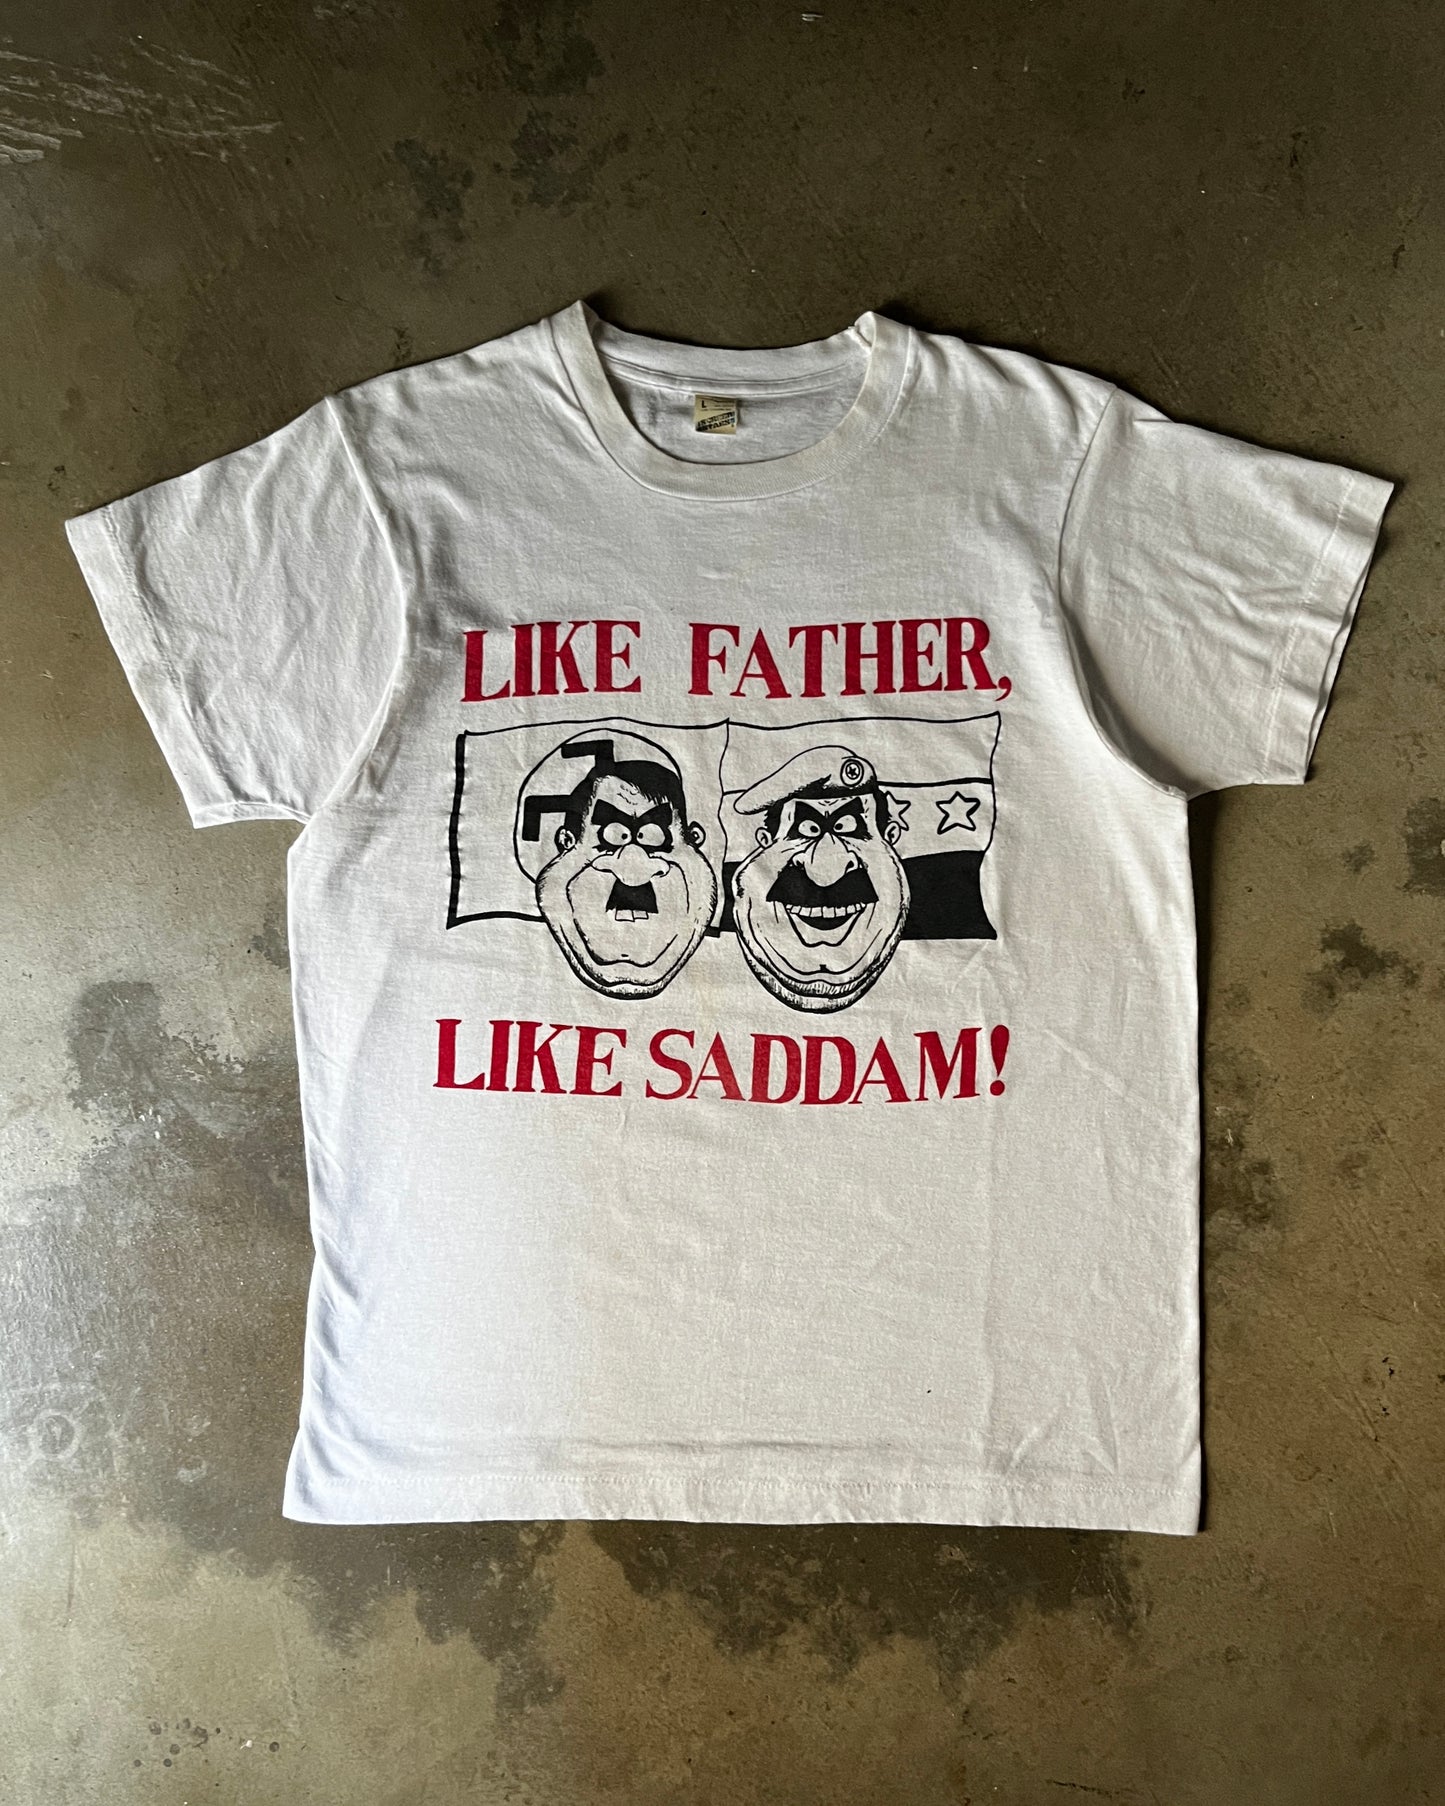 1980's "Like Father, Like Sadam" Tee